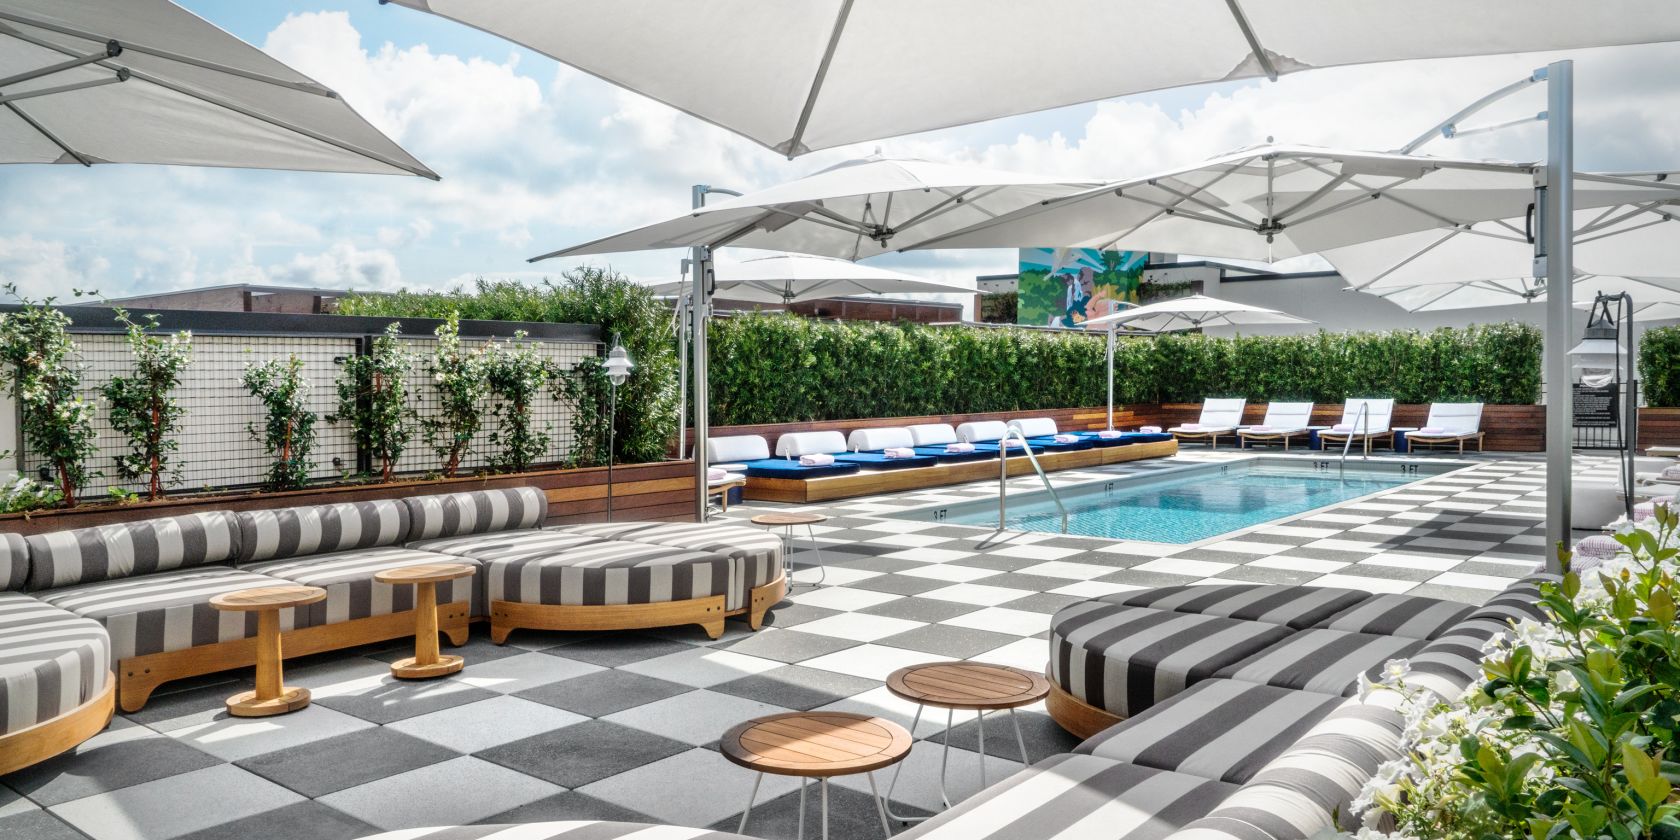 Rooftop pool in Savannah GA at Perry Lane Hotel